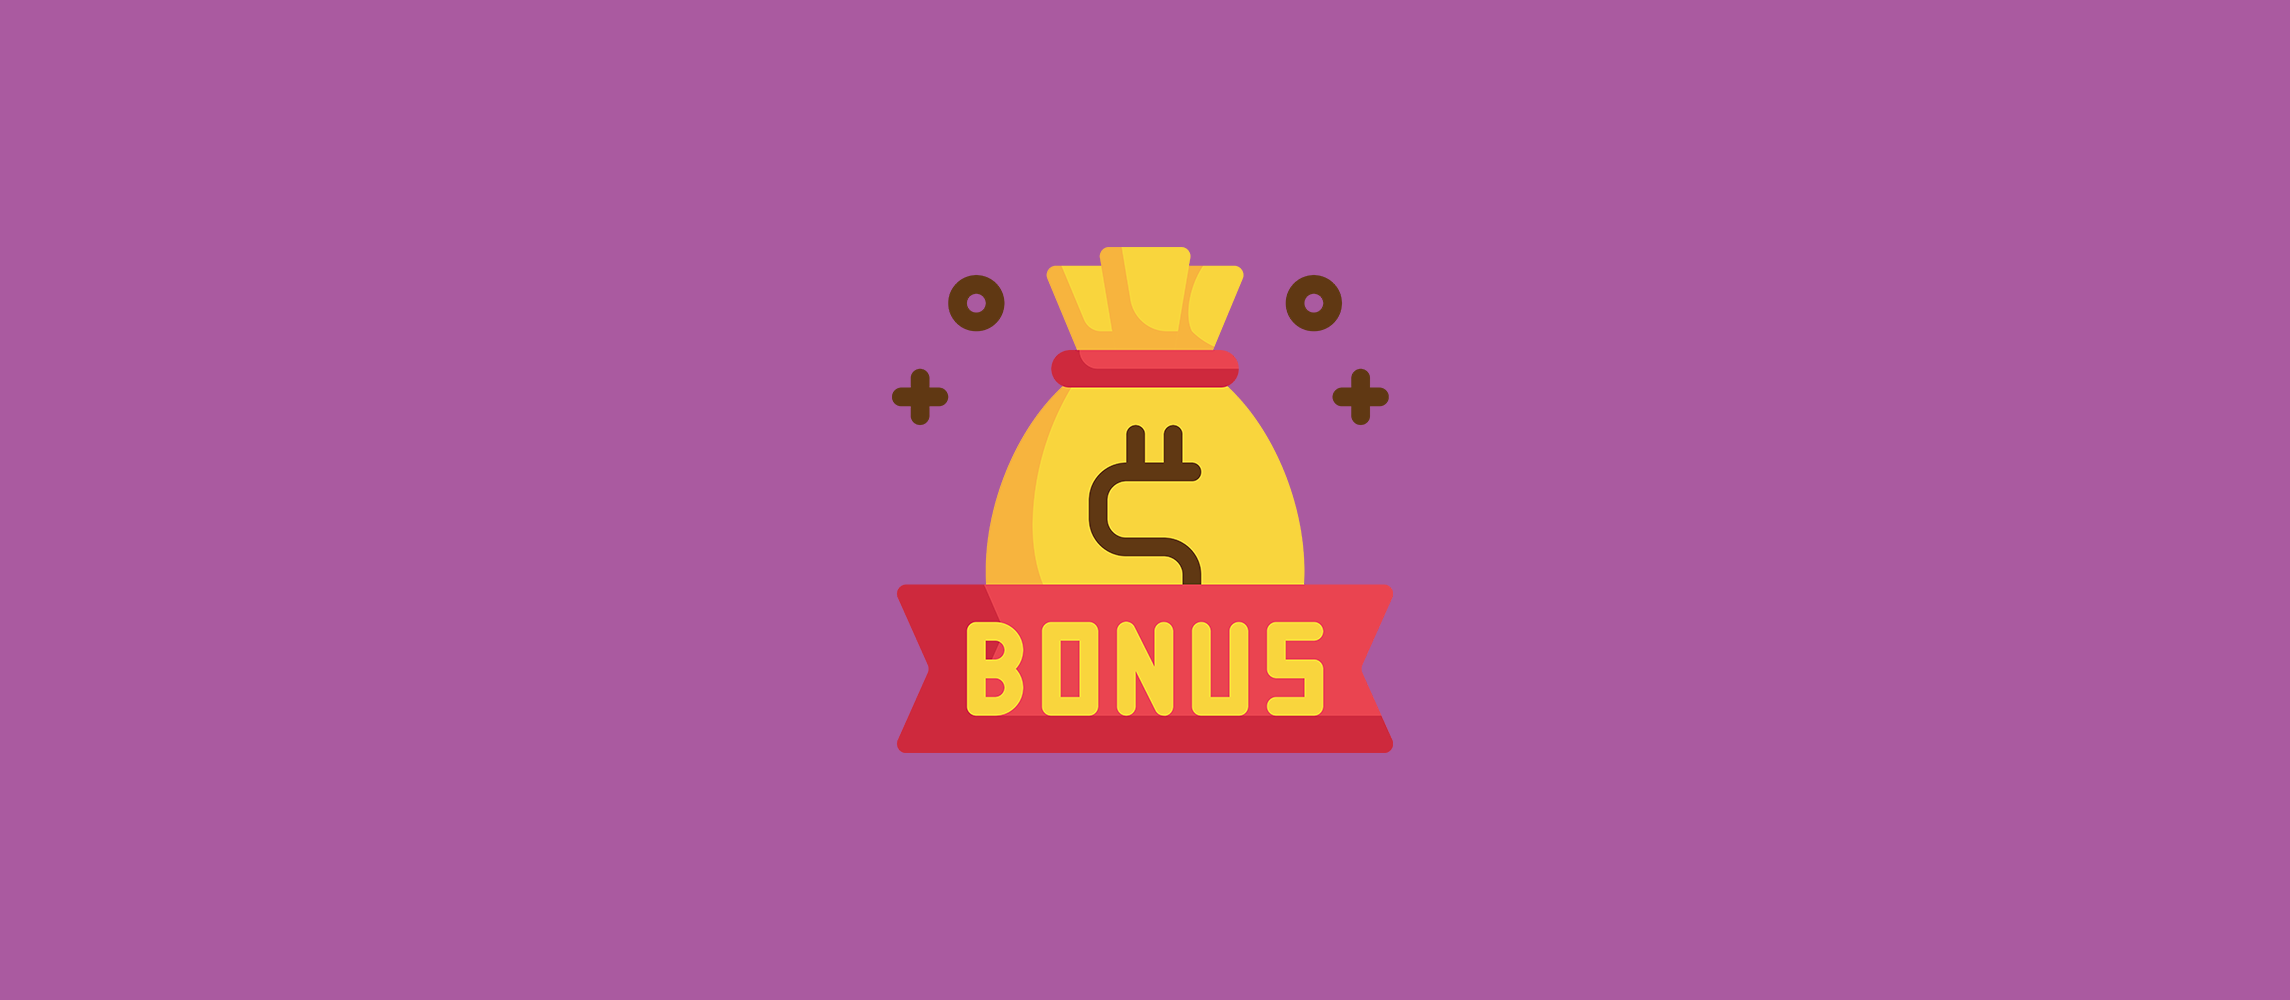 bonus gratis casino online